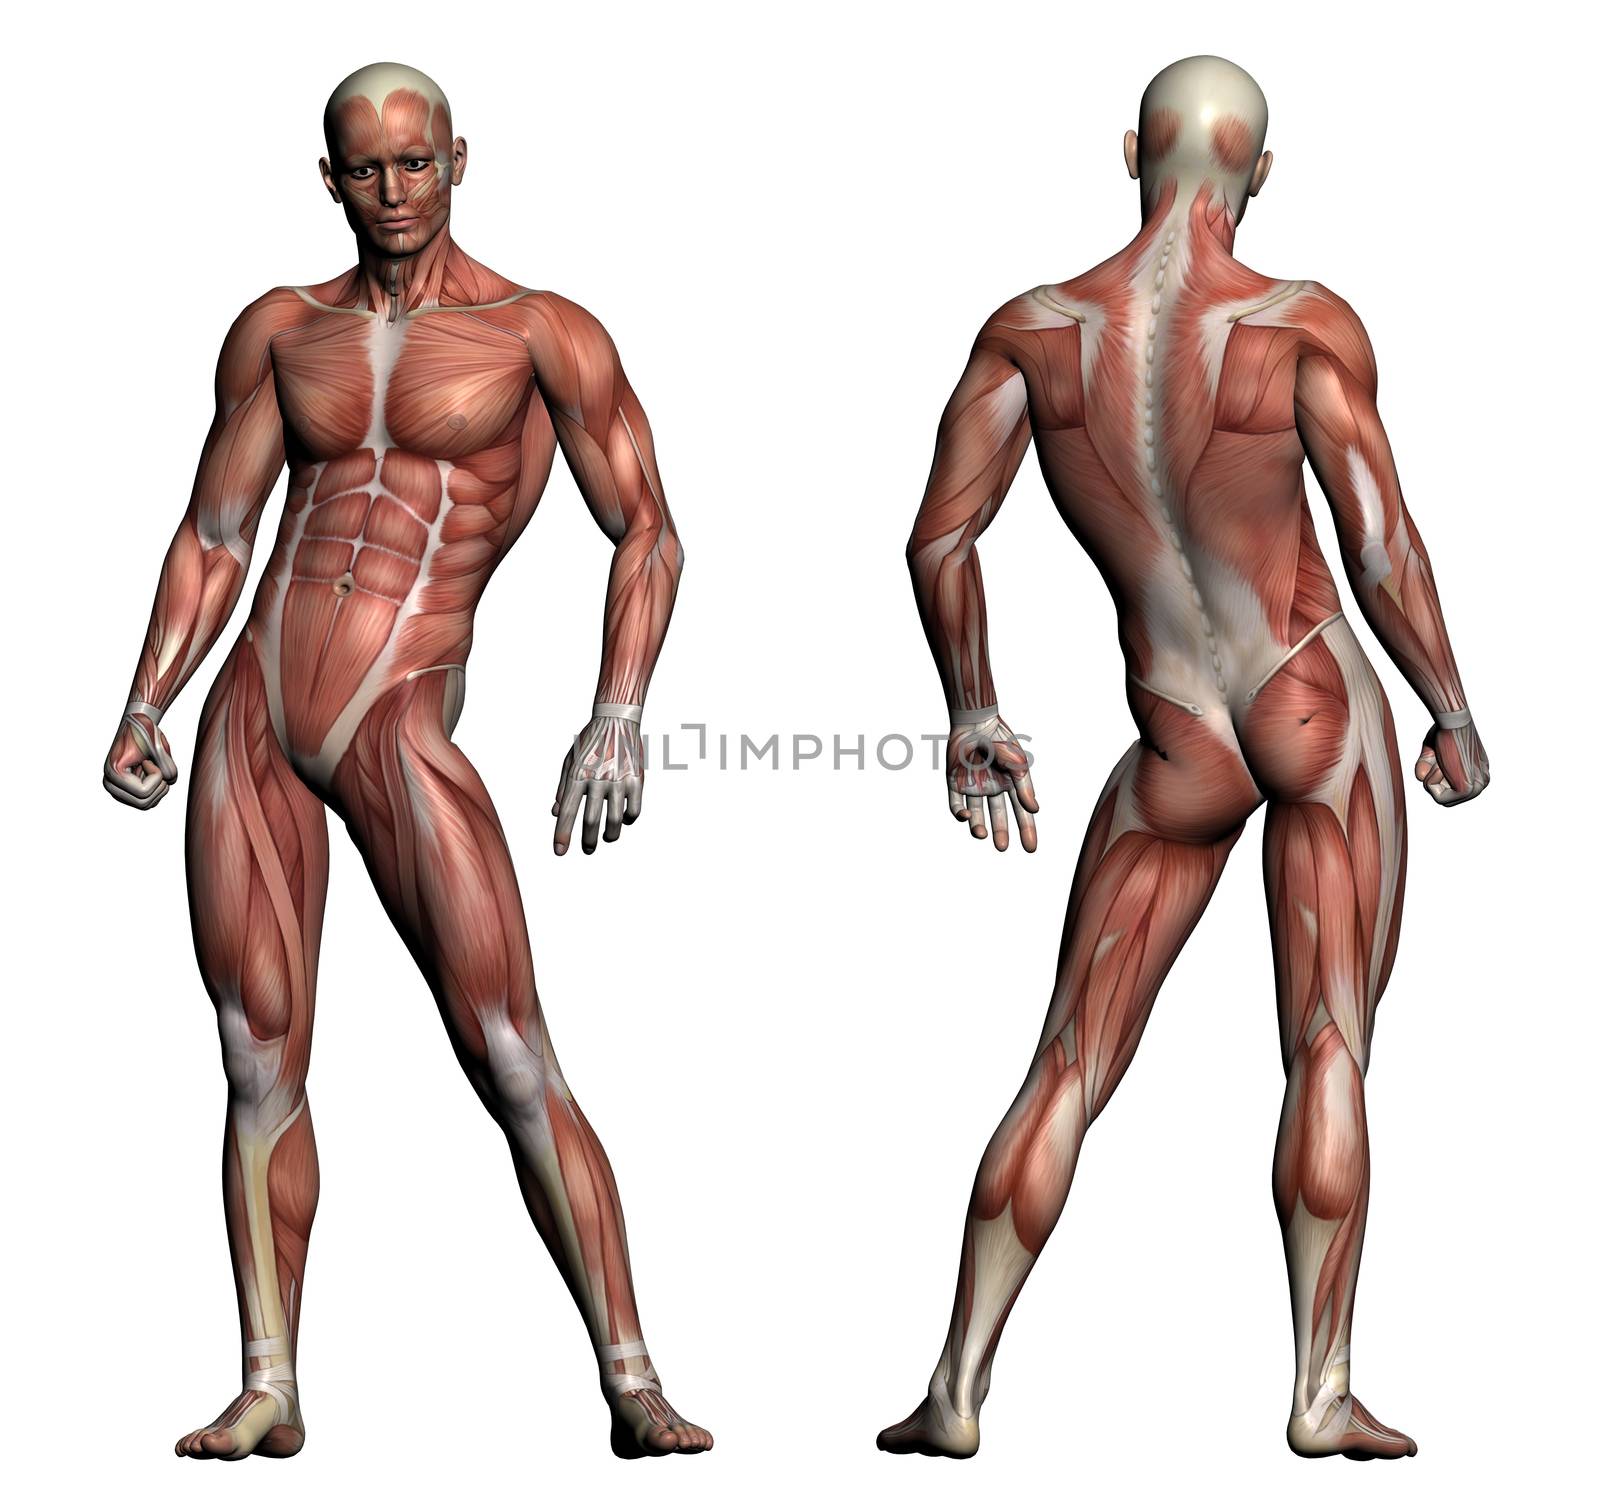 Human Anatomy - Male Muscles by vitanovski